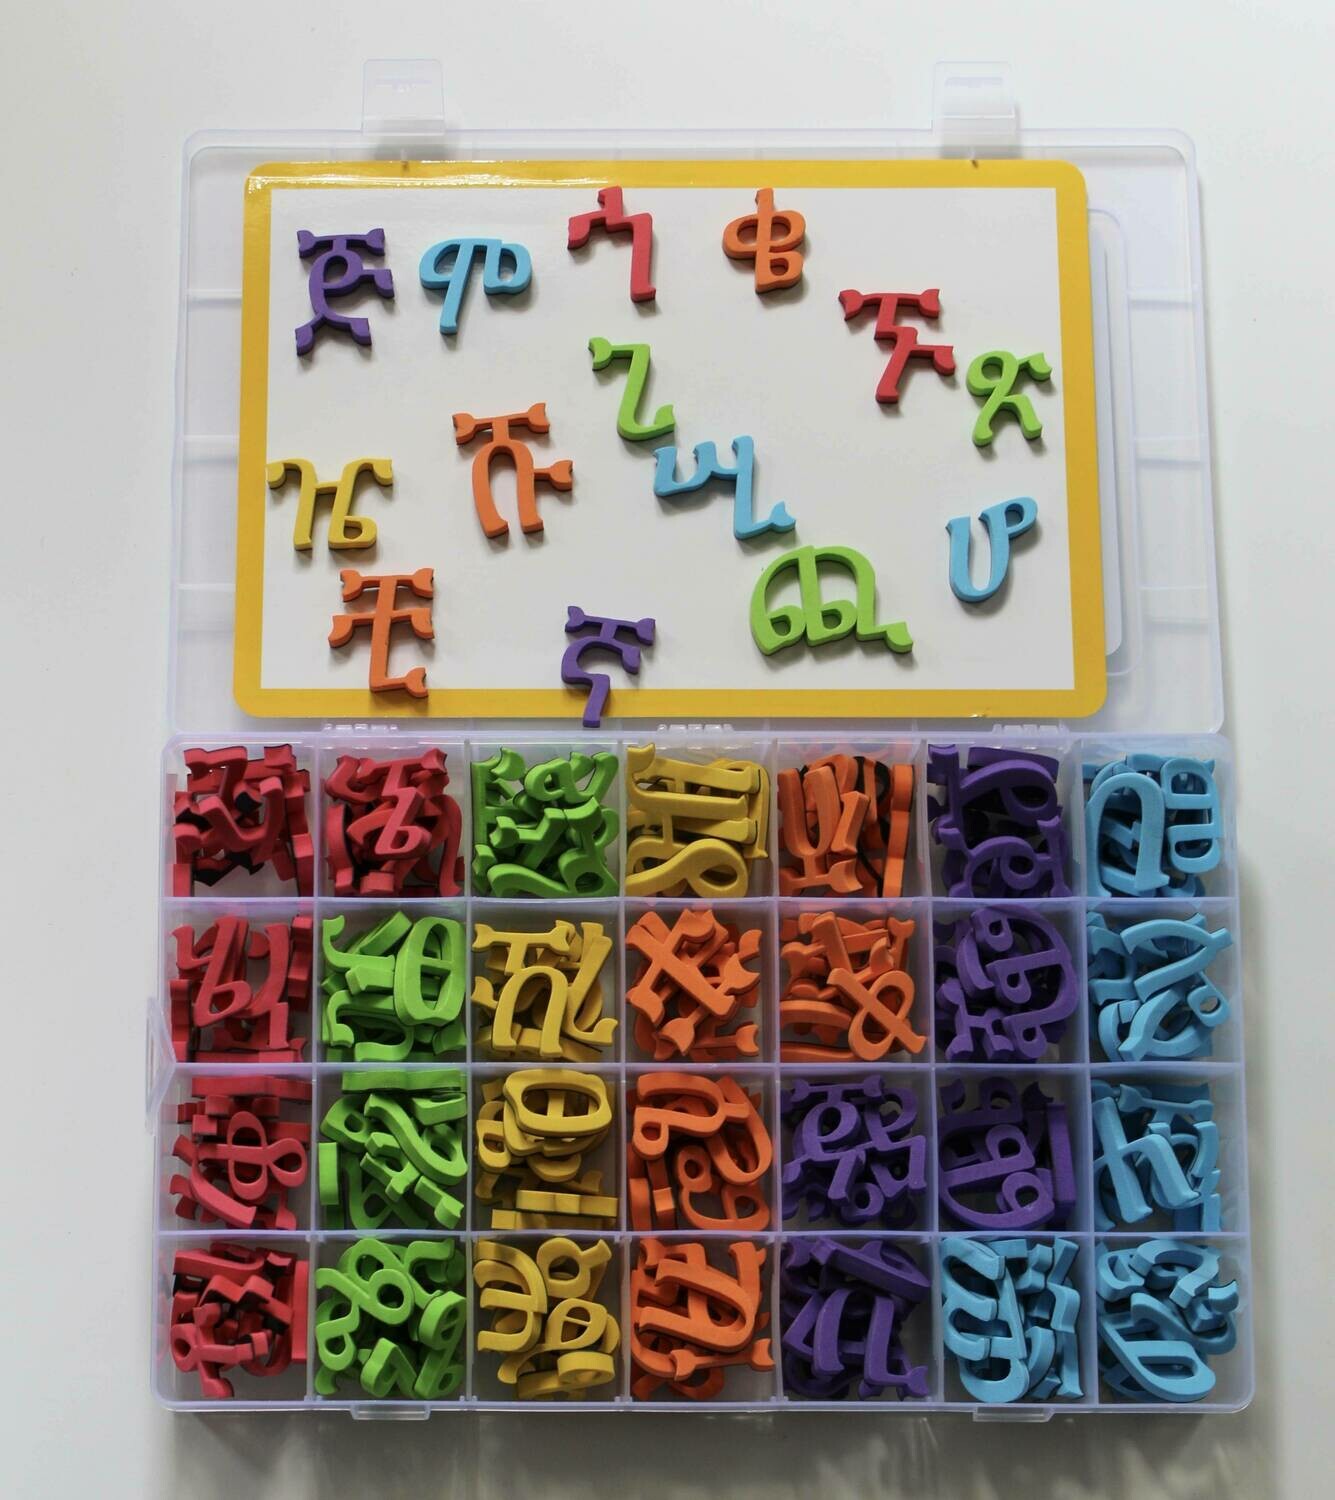 የፊደል መማርያ ማግኔት ለልጆች Amharic Fidel Letters Magnetic | All 231 alphabets | Geez